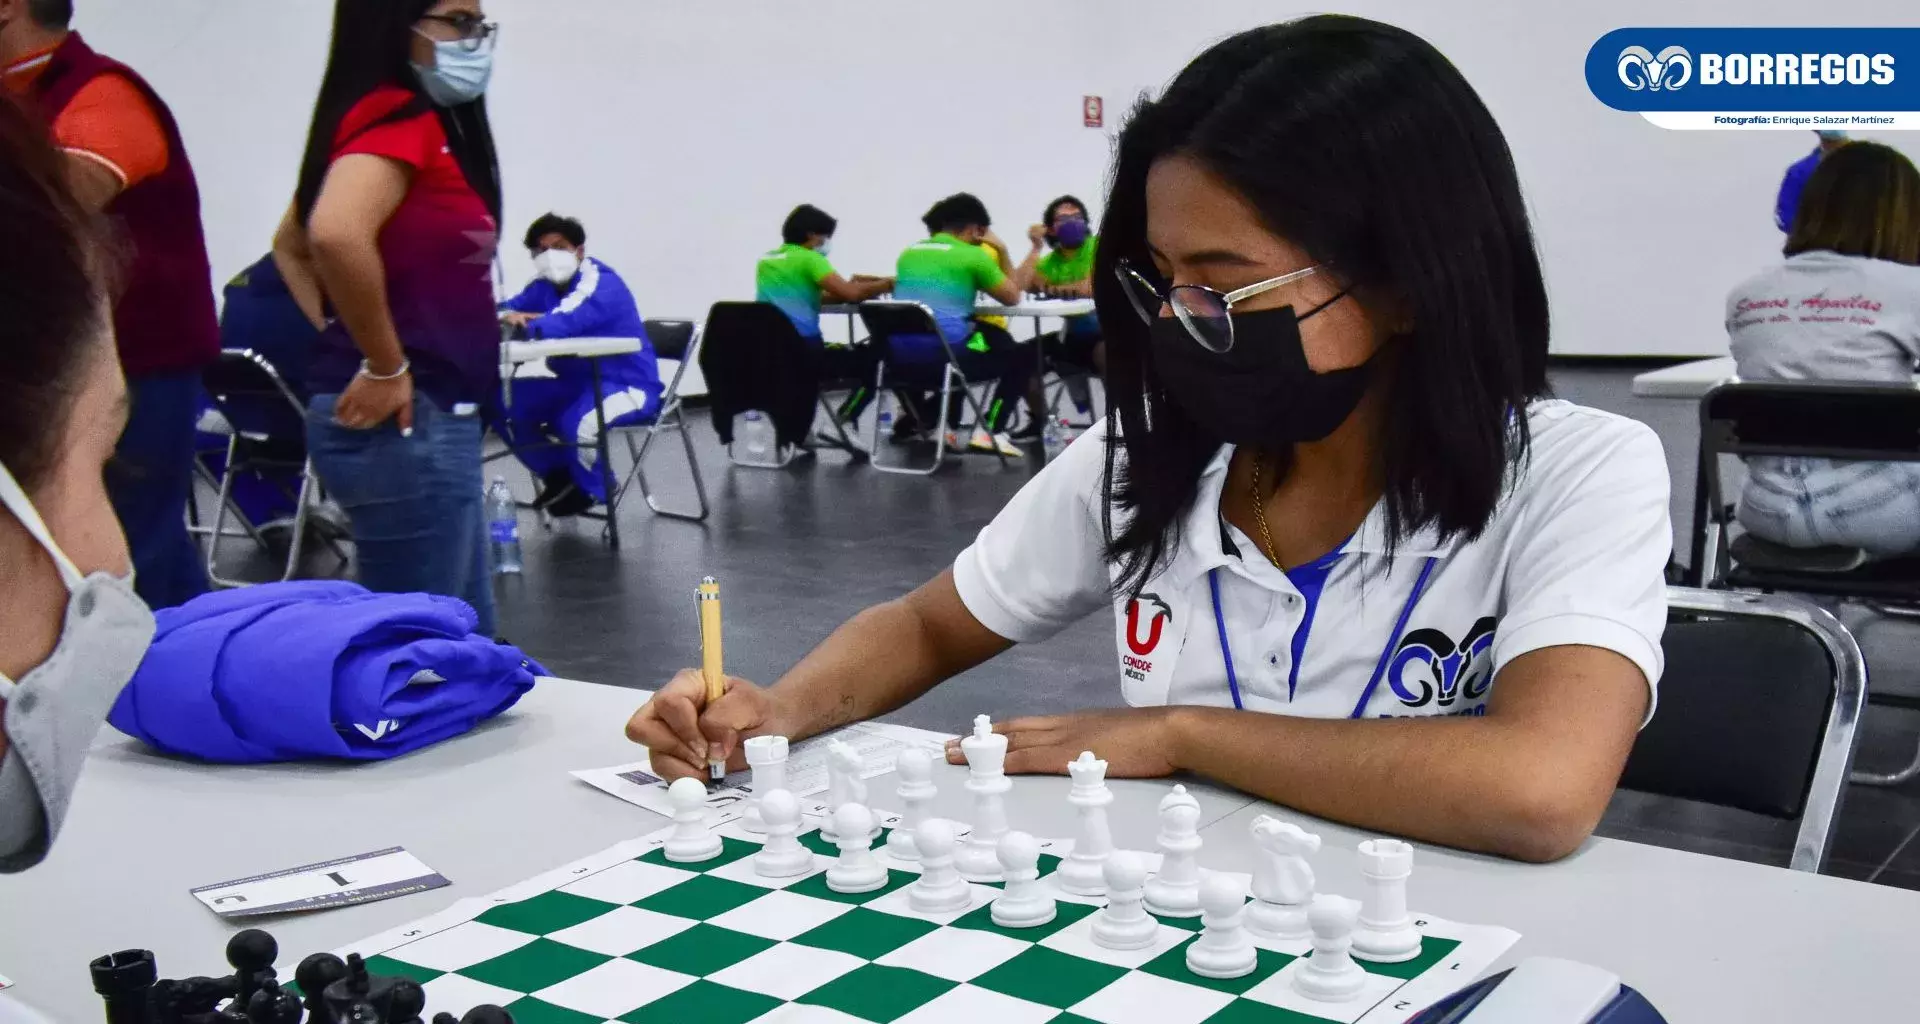 Borregos Puebla de ajedrez es un programa exitoso dentro del Tec de Monterrey campus Puebla.